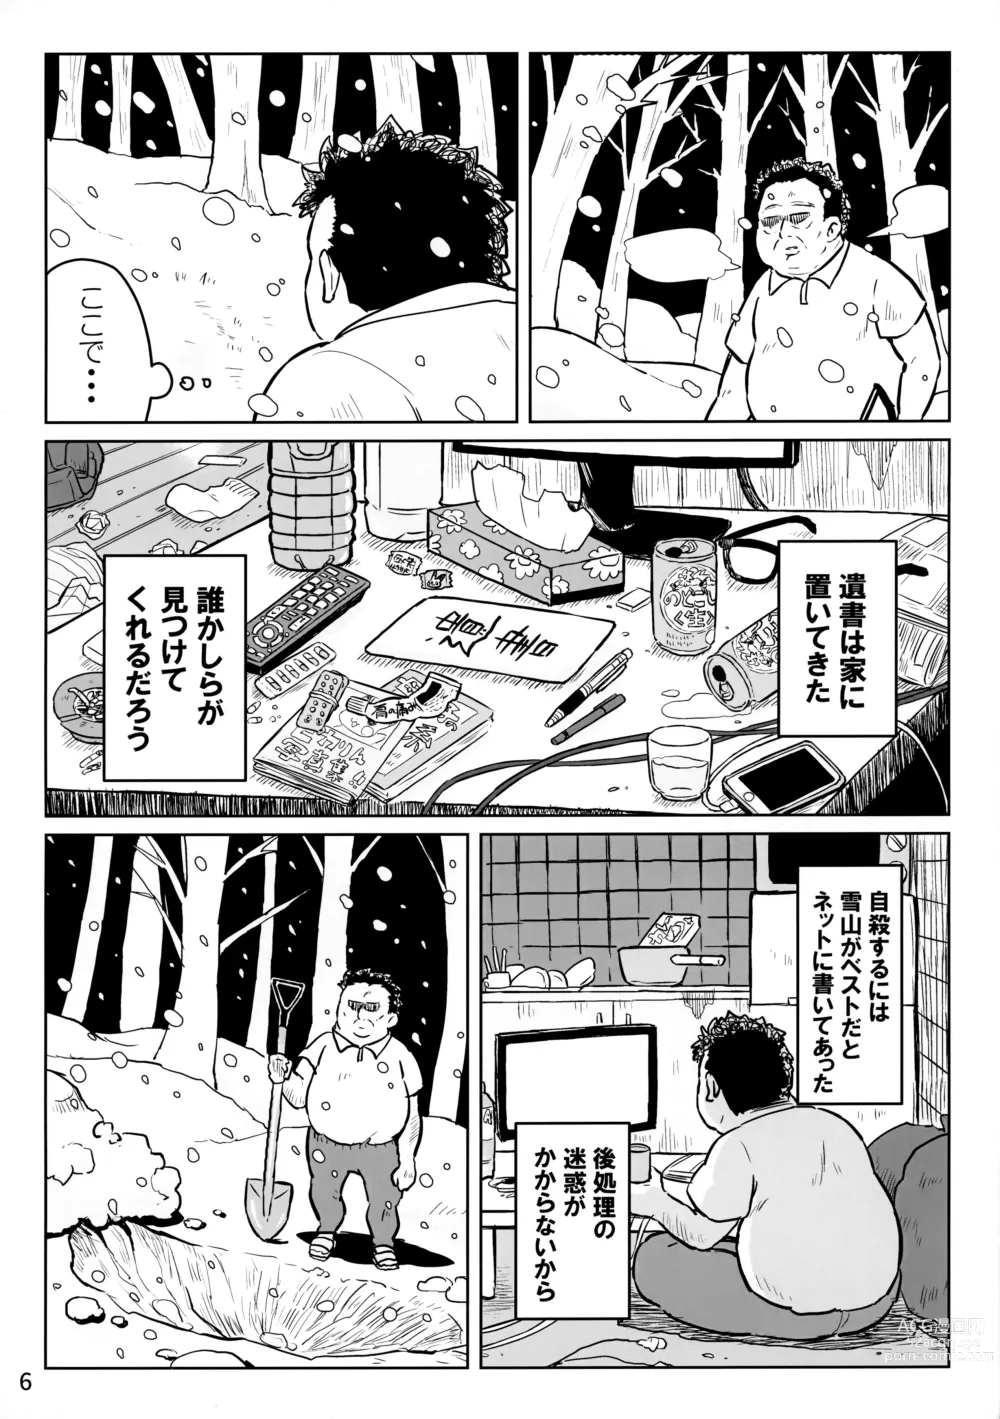 Page 5 of doujinshi Hau-kun ga Oji-san o Temochi ni Kuwaeru Hanashi